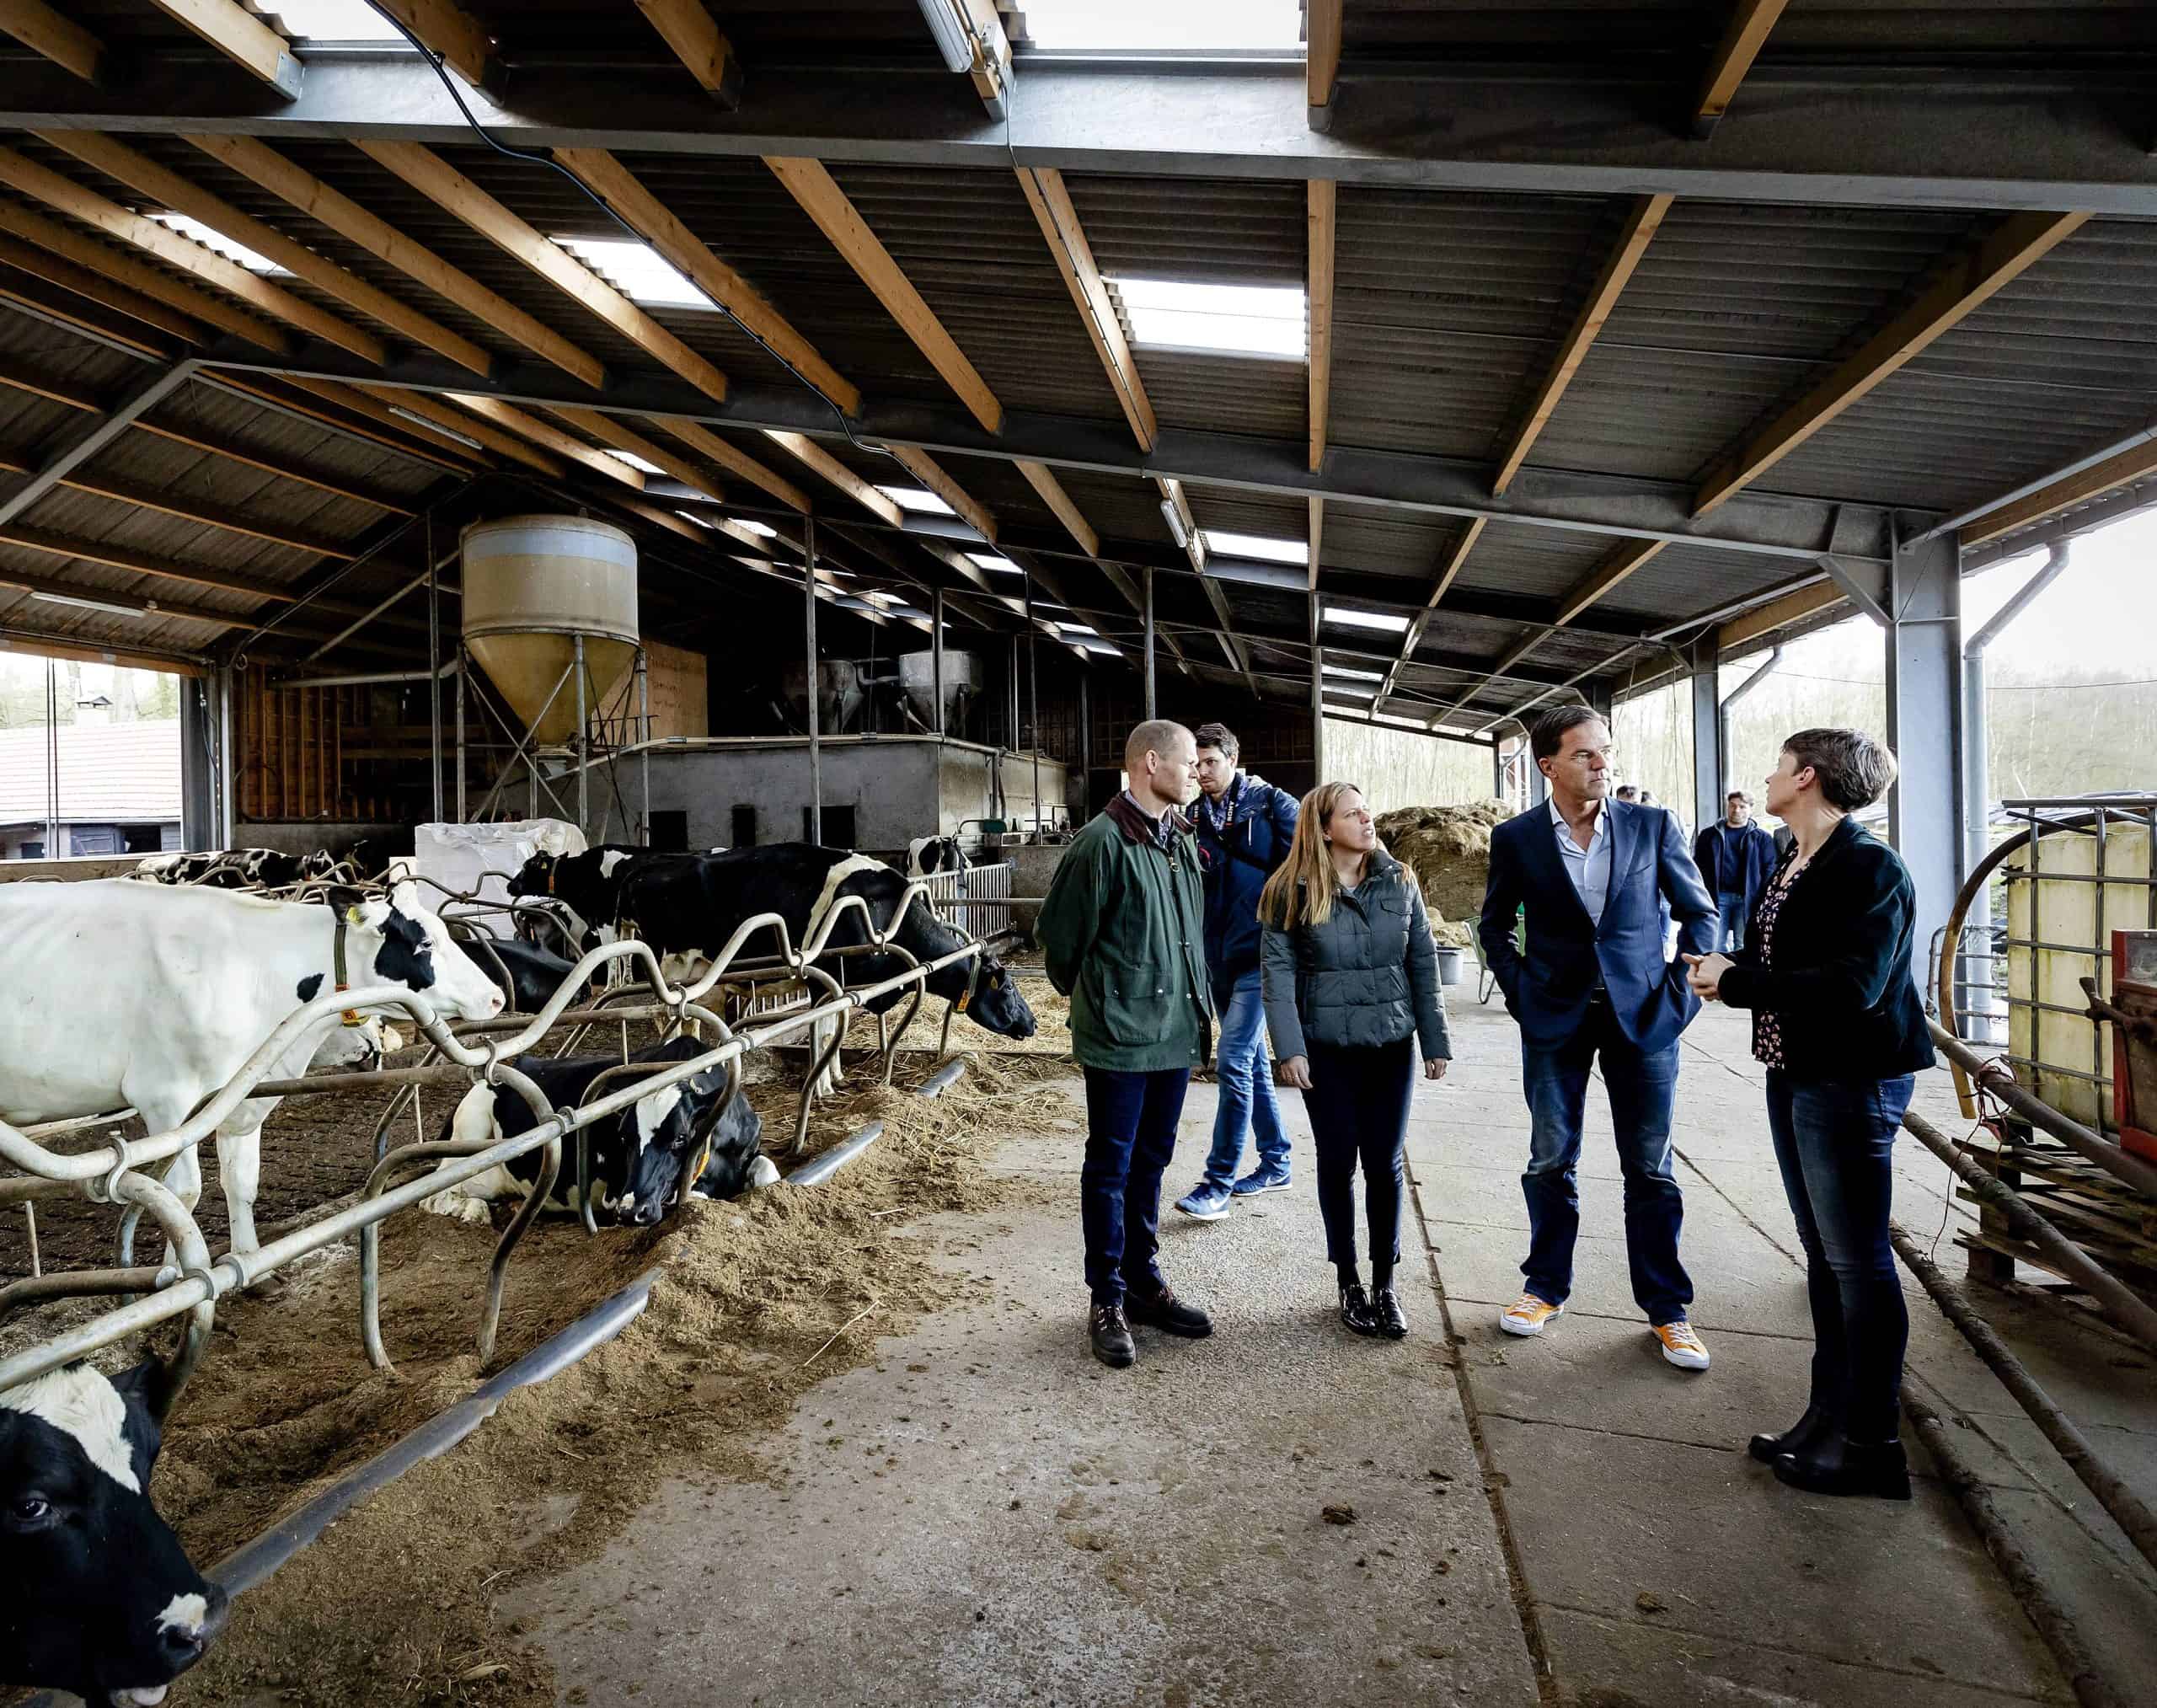 Wil Rutte de Nederlandse voedselproductie in handen zien te krijgen?￼